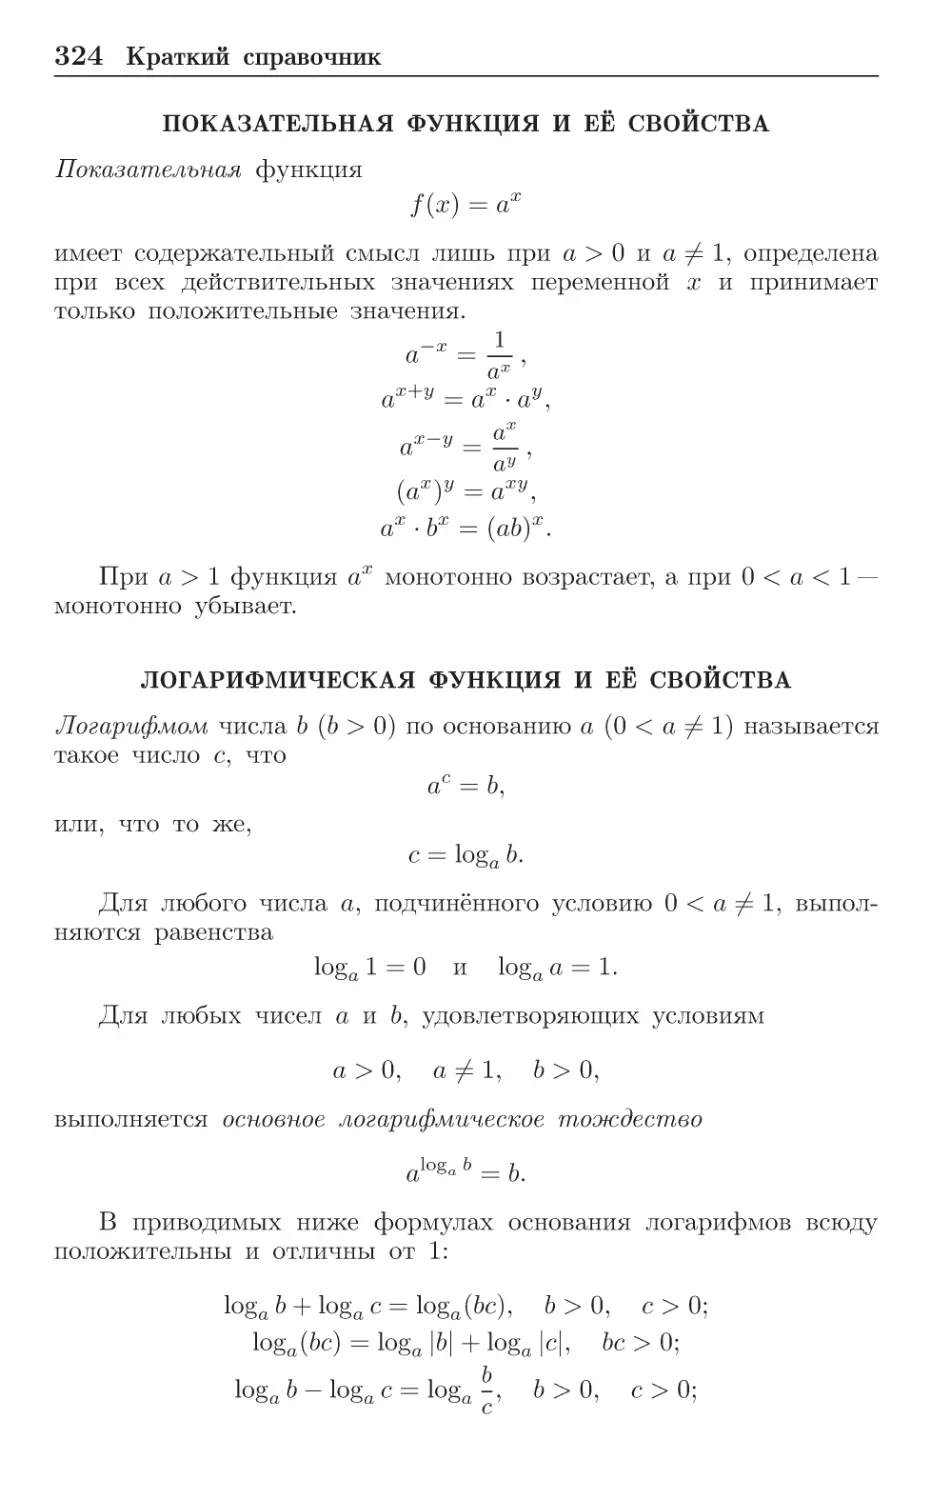 Показательная функция и её свойства
Логарифмическая функция и её свойства